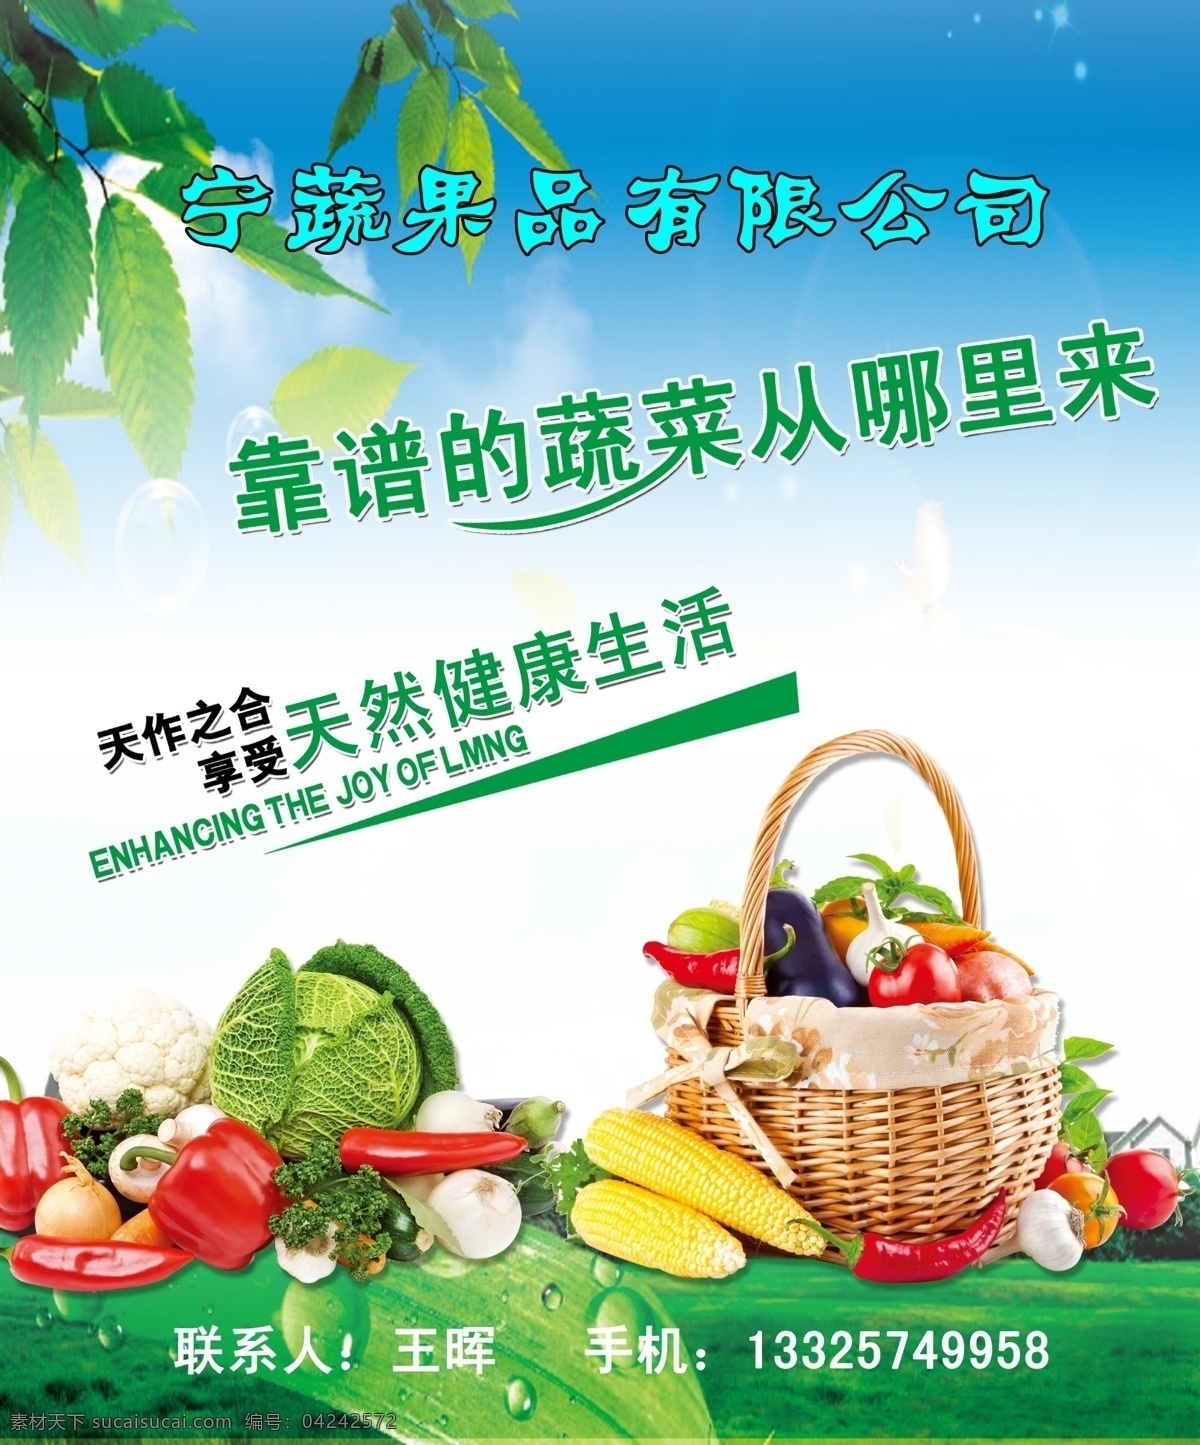 农产品展板 蔬菜果品 蔬菜 水果 菜篮子 蓝天 绿叶 草地 草原 展板模板 广告设计模板 源文件